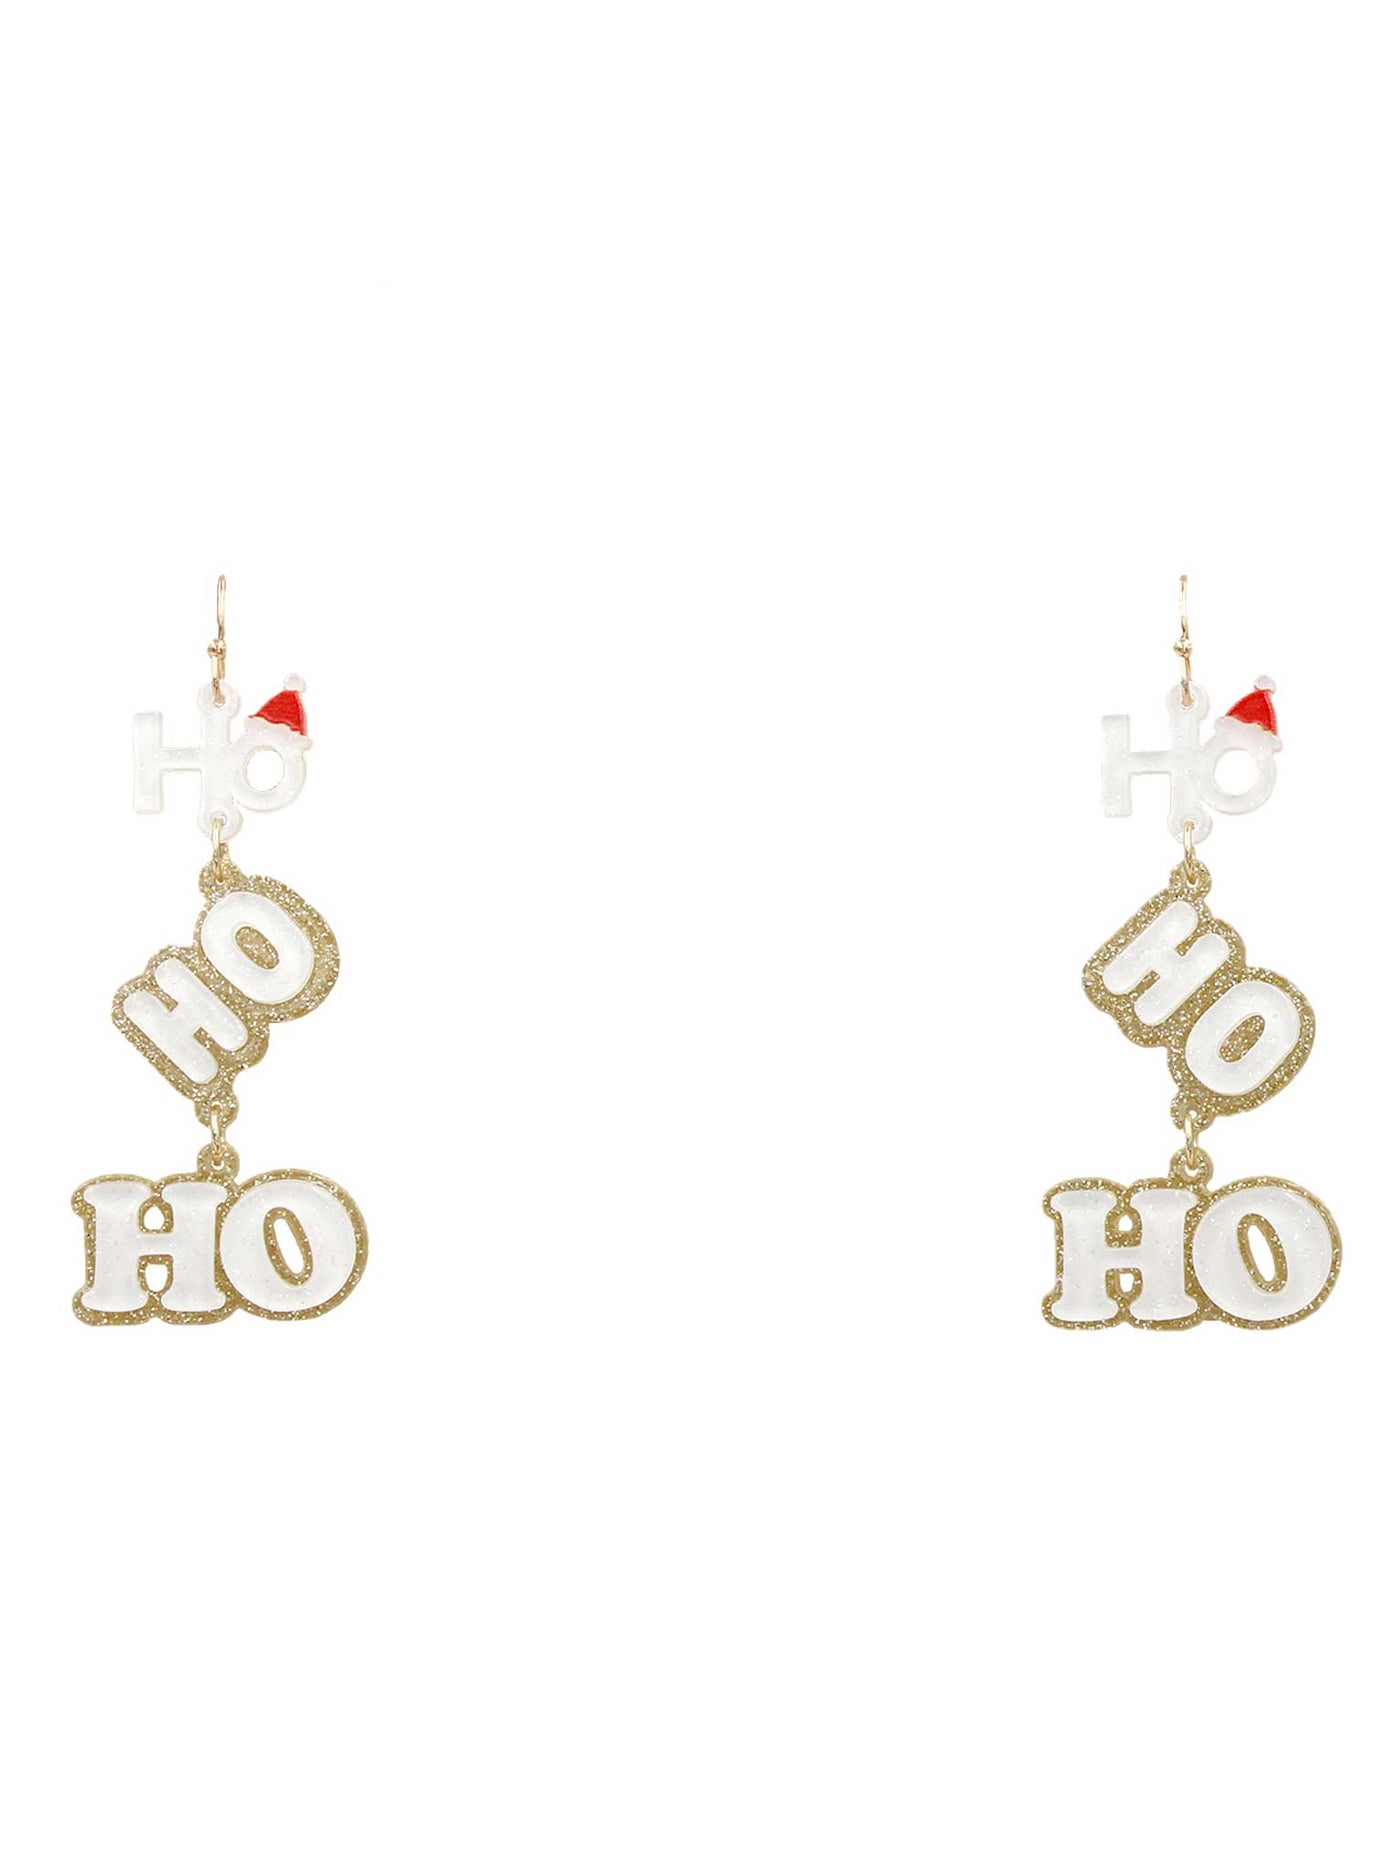 HoHoHo Acrylic Earrings